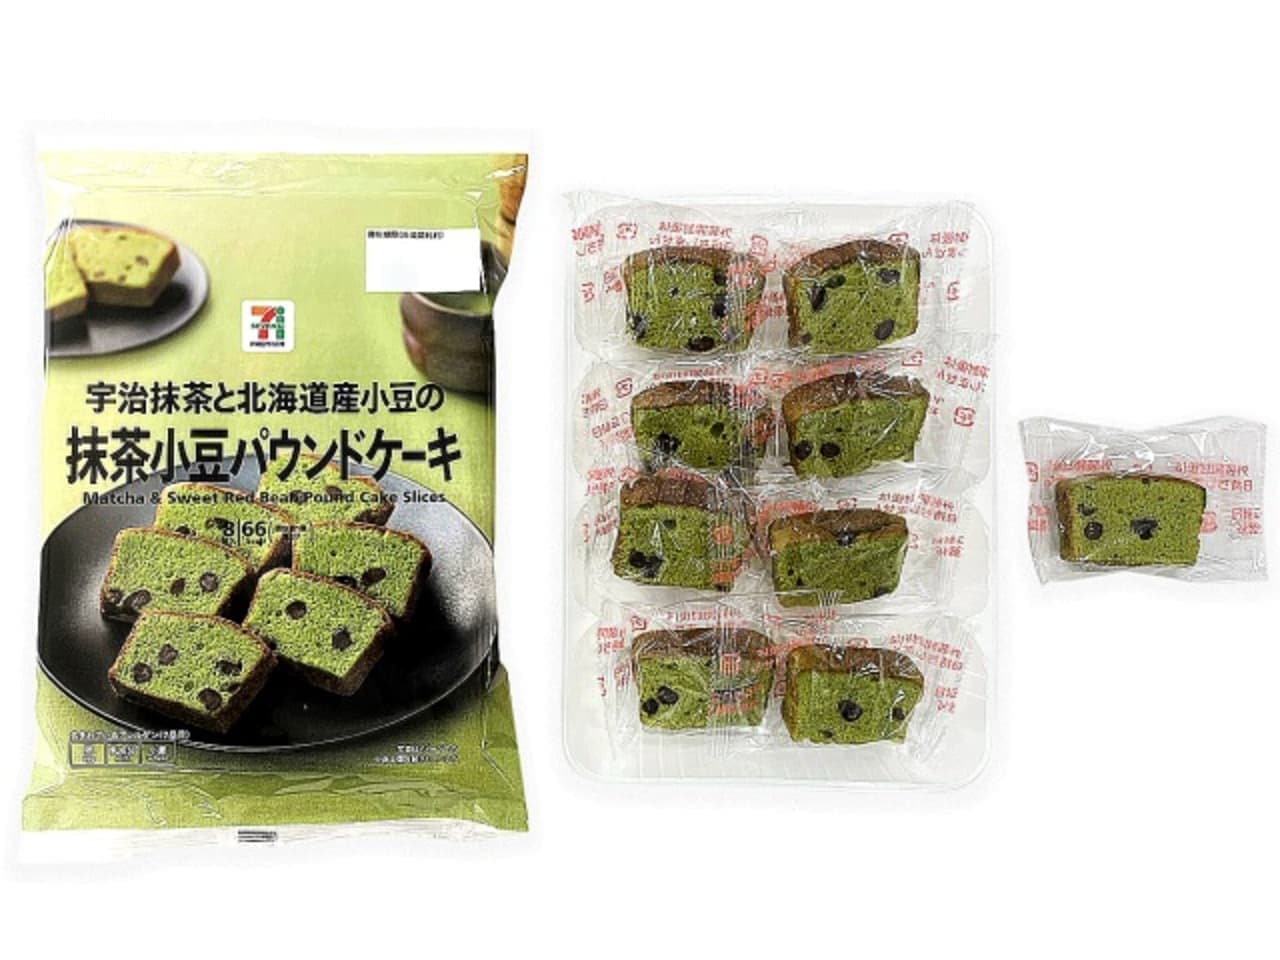 7-ELEVEN "7 Premium Green Tea and Azuki Bean Pound Cake".